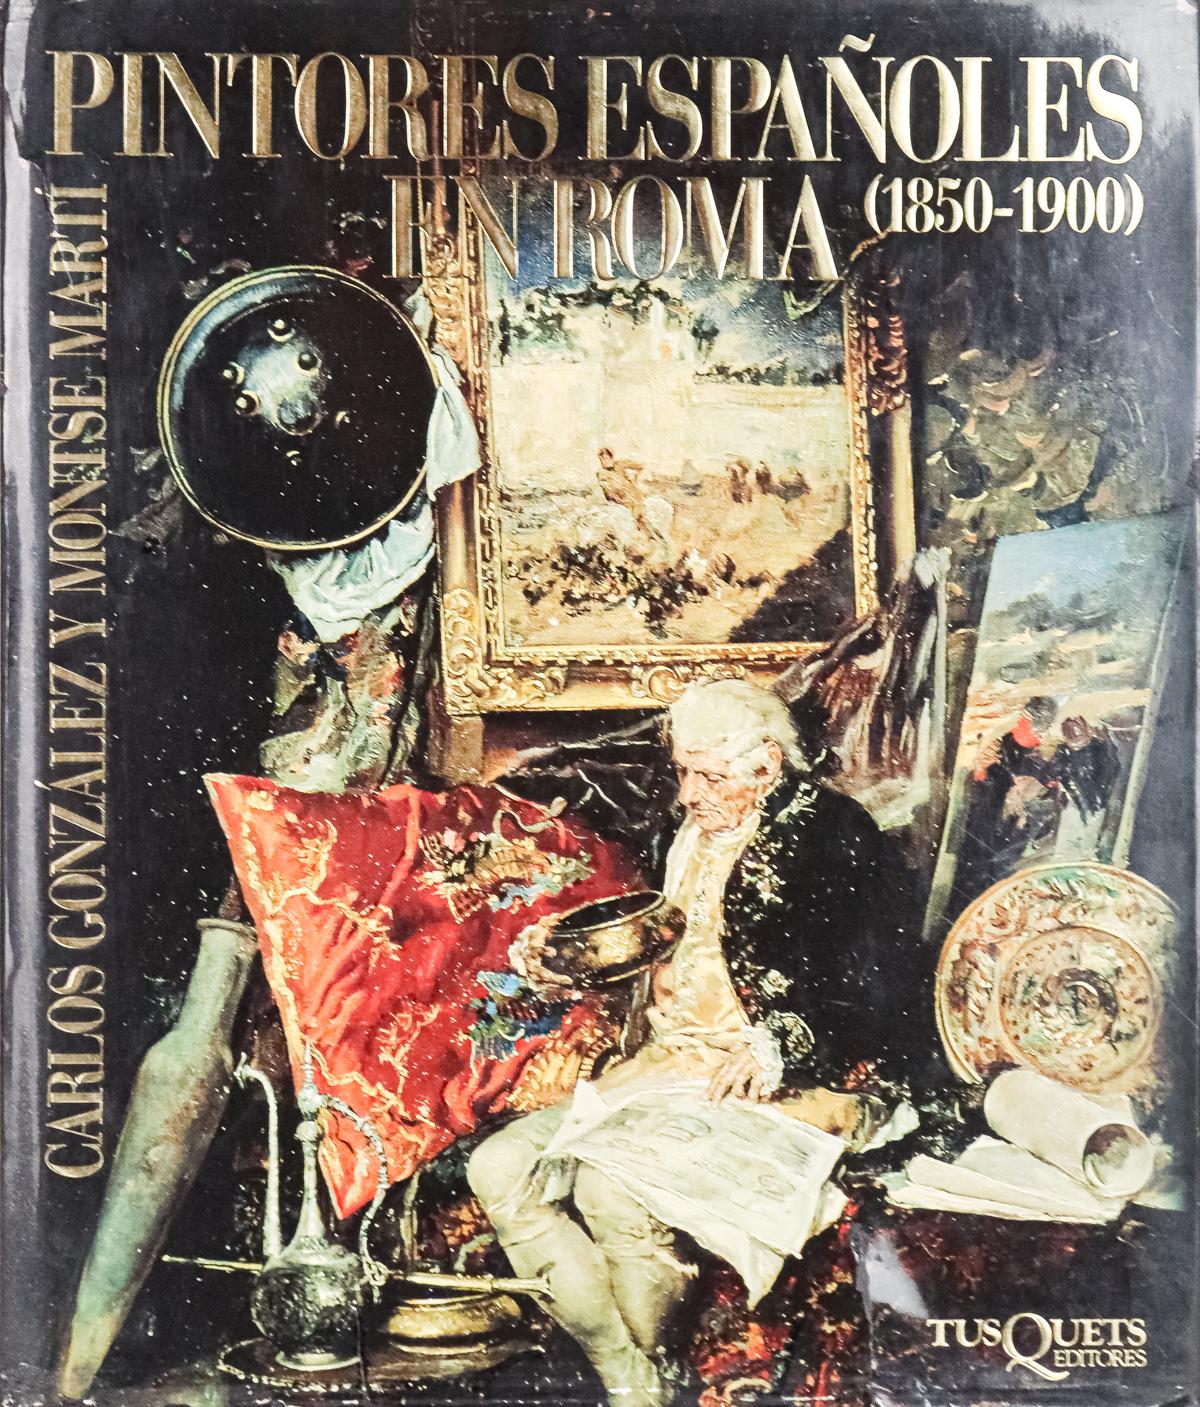 "PINTORES ESPAÑOLES EN ROMA (1850-1900)"